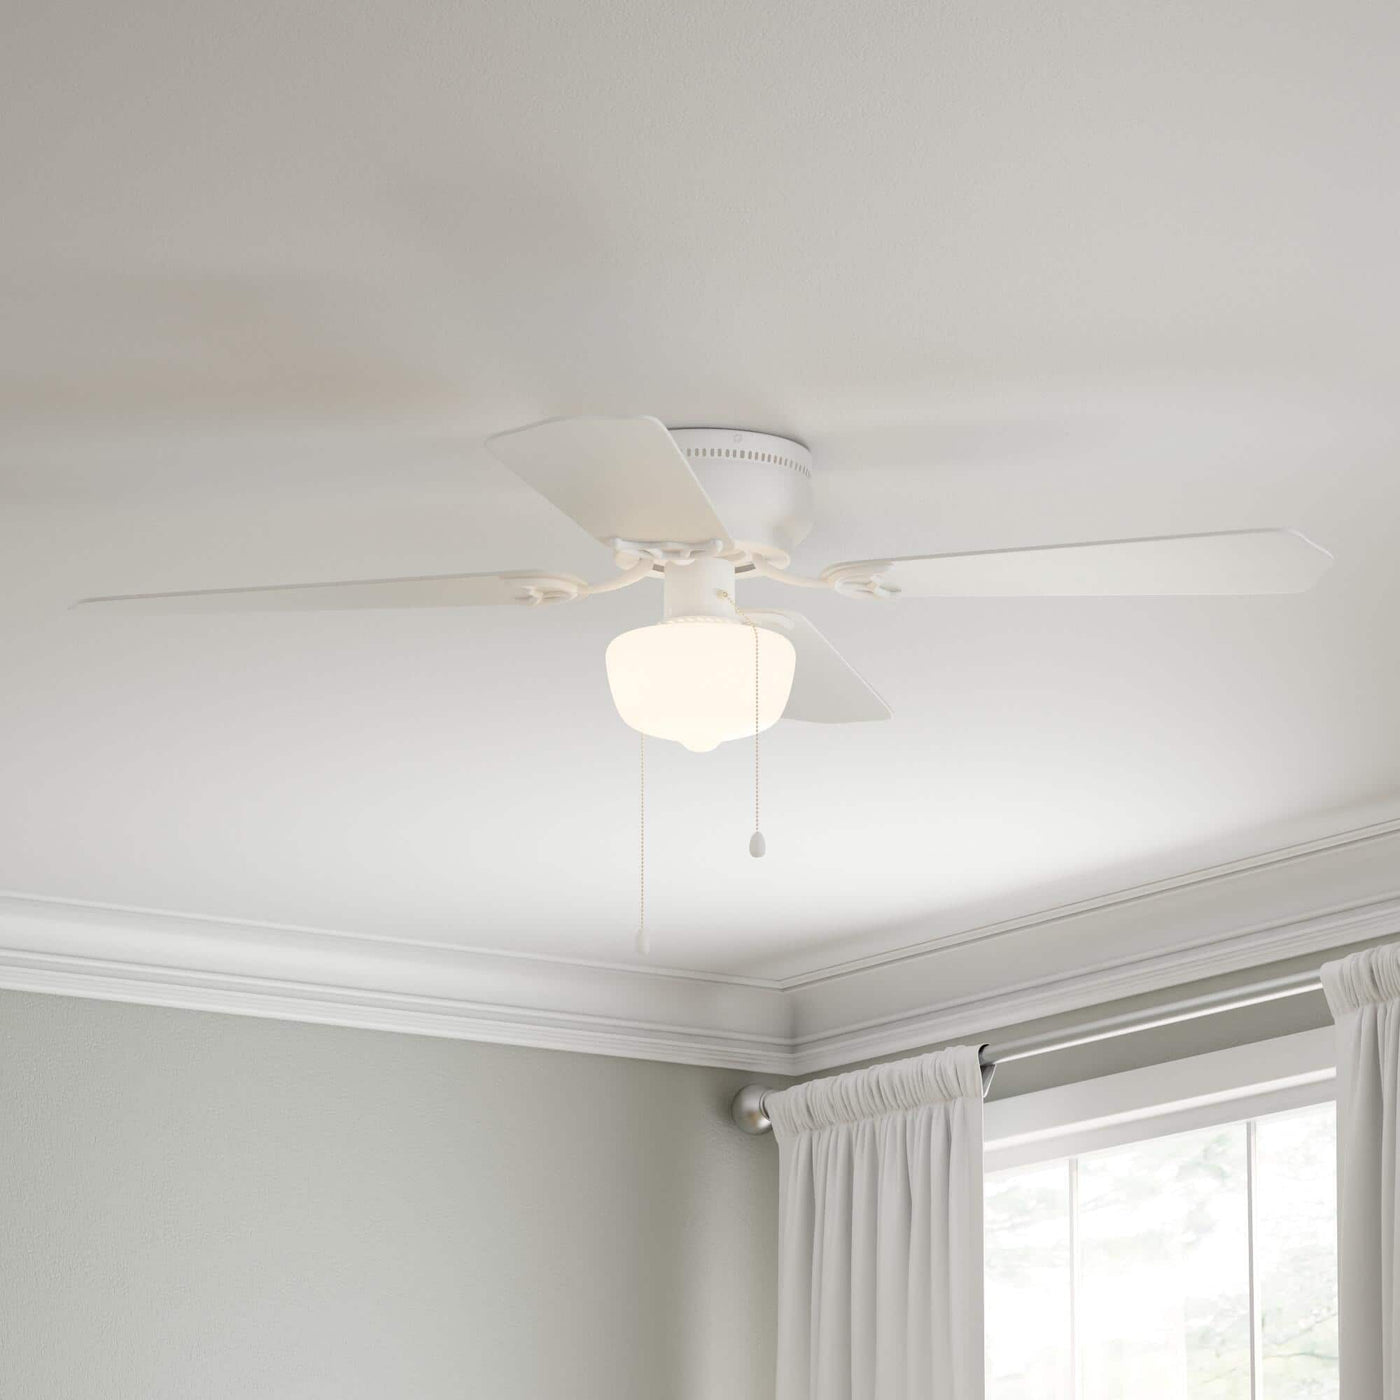 Littleton 42 in. LED Indoor White Ceiling Fan with Light Kit - $25